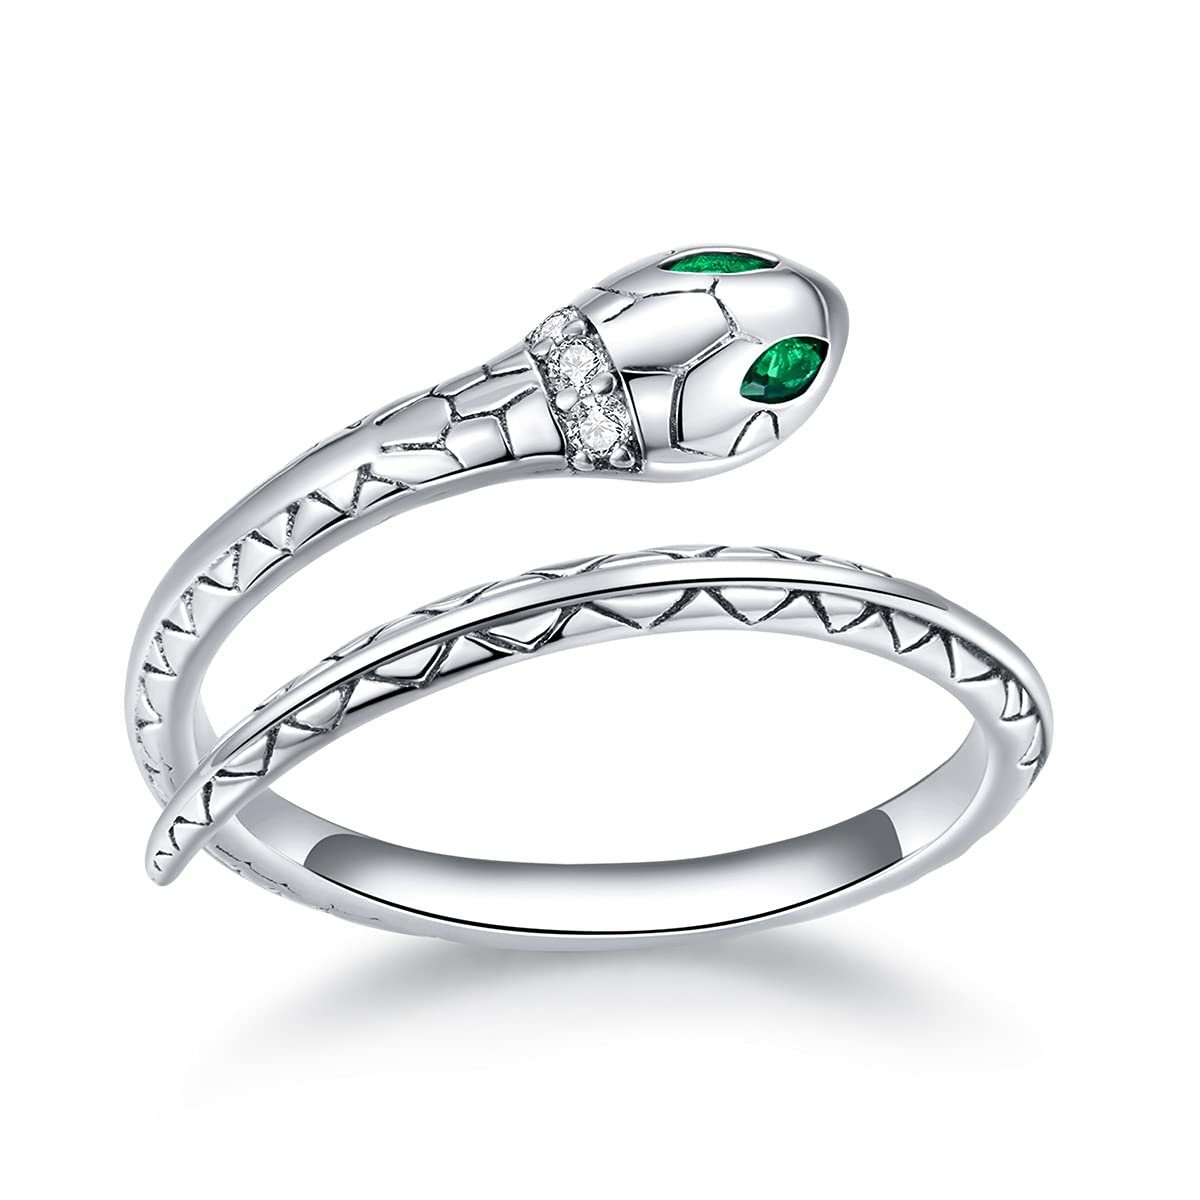 Housruse Fingerring Schlangenring für Damen mit verstellbarer Öffnung und  grünem Zirkonia